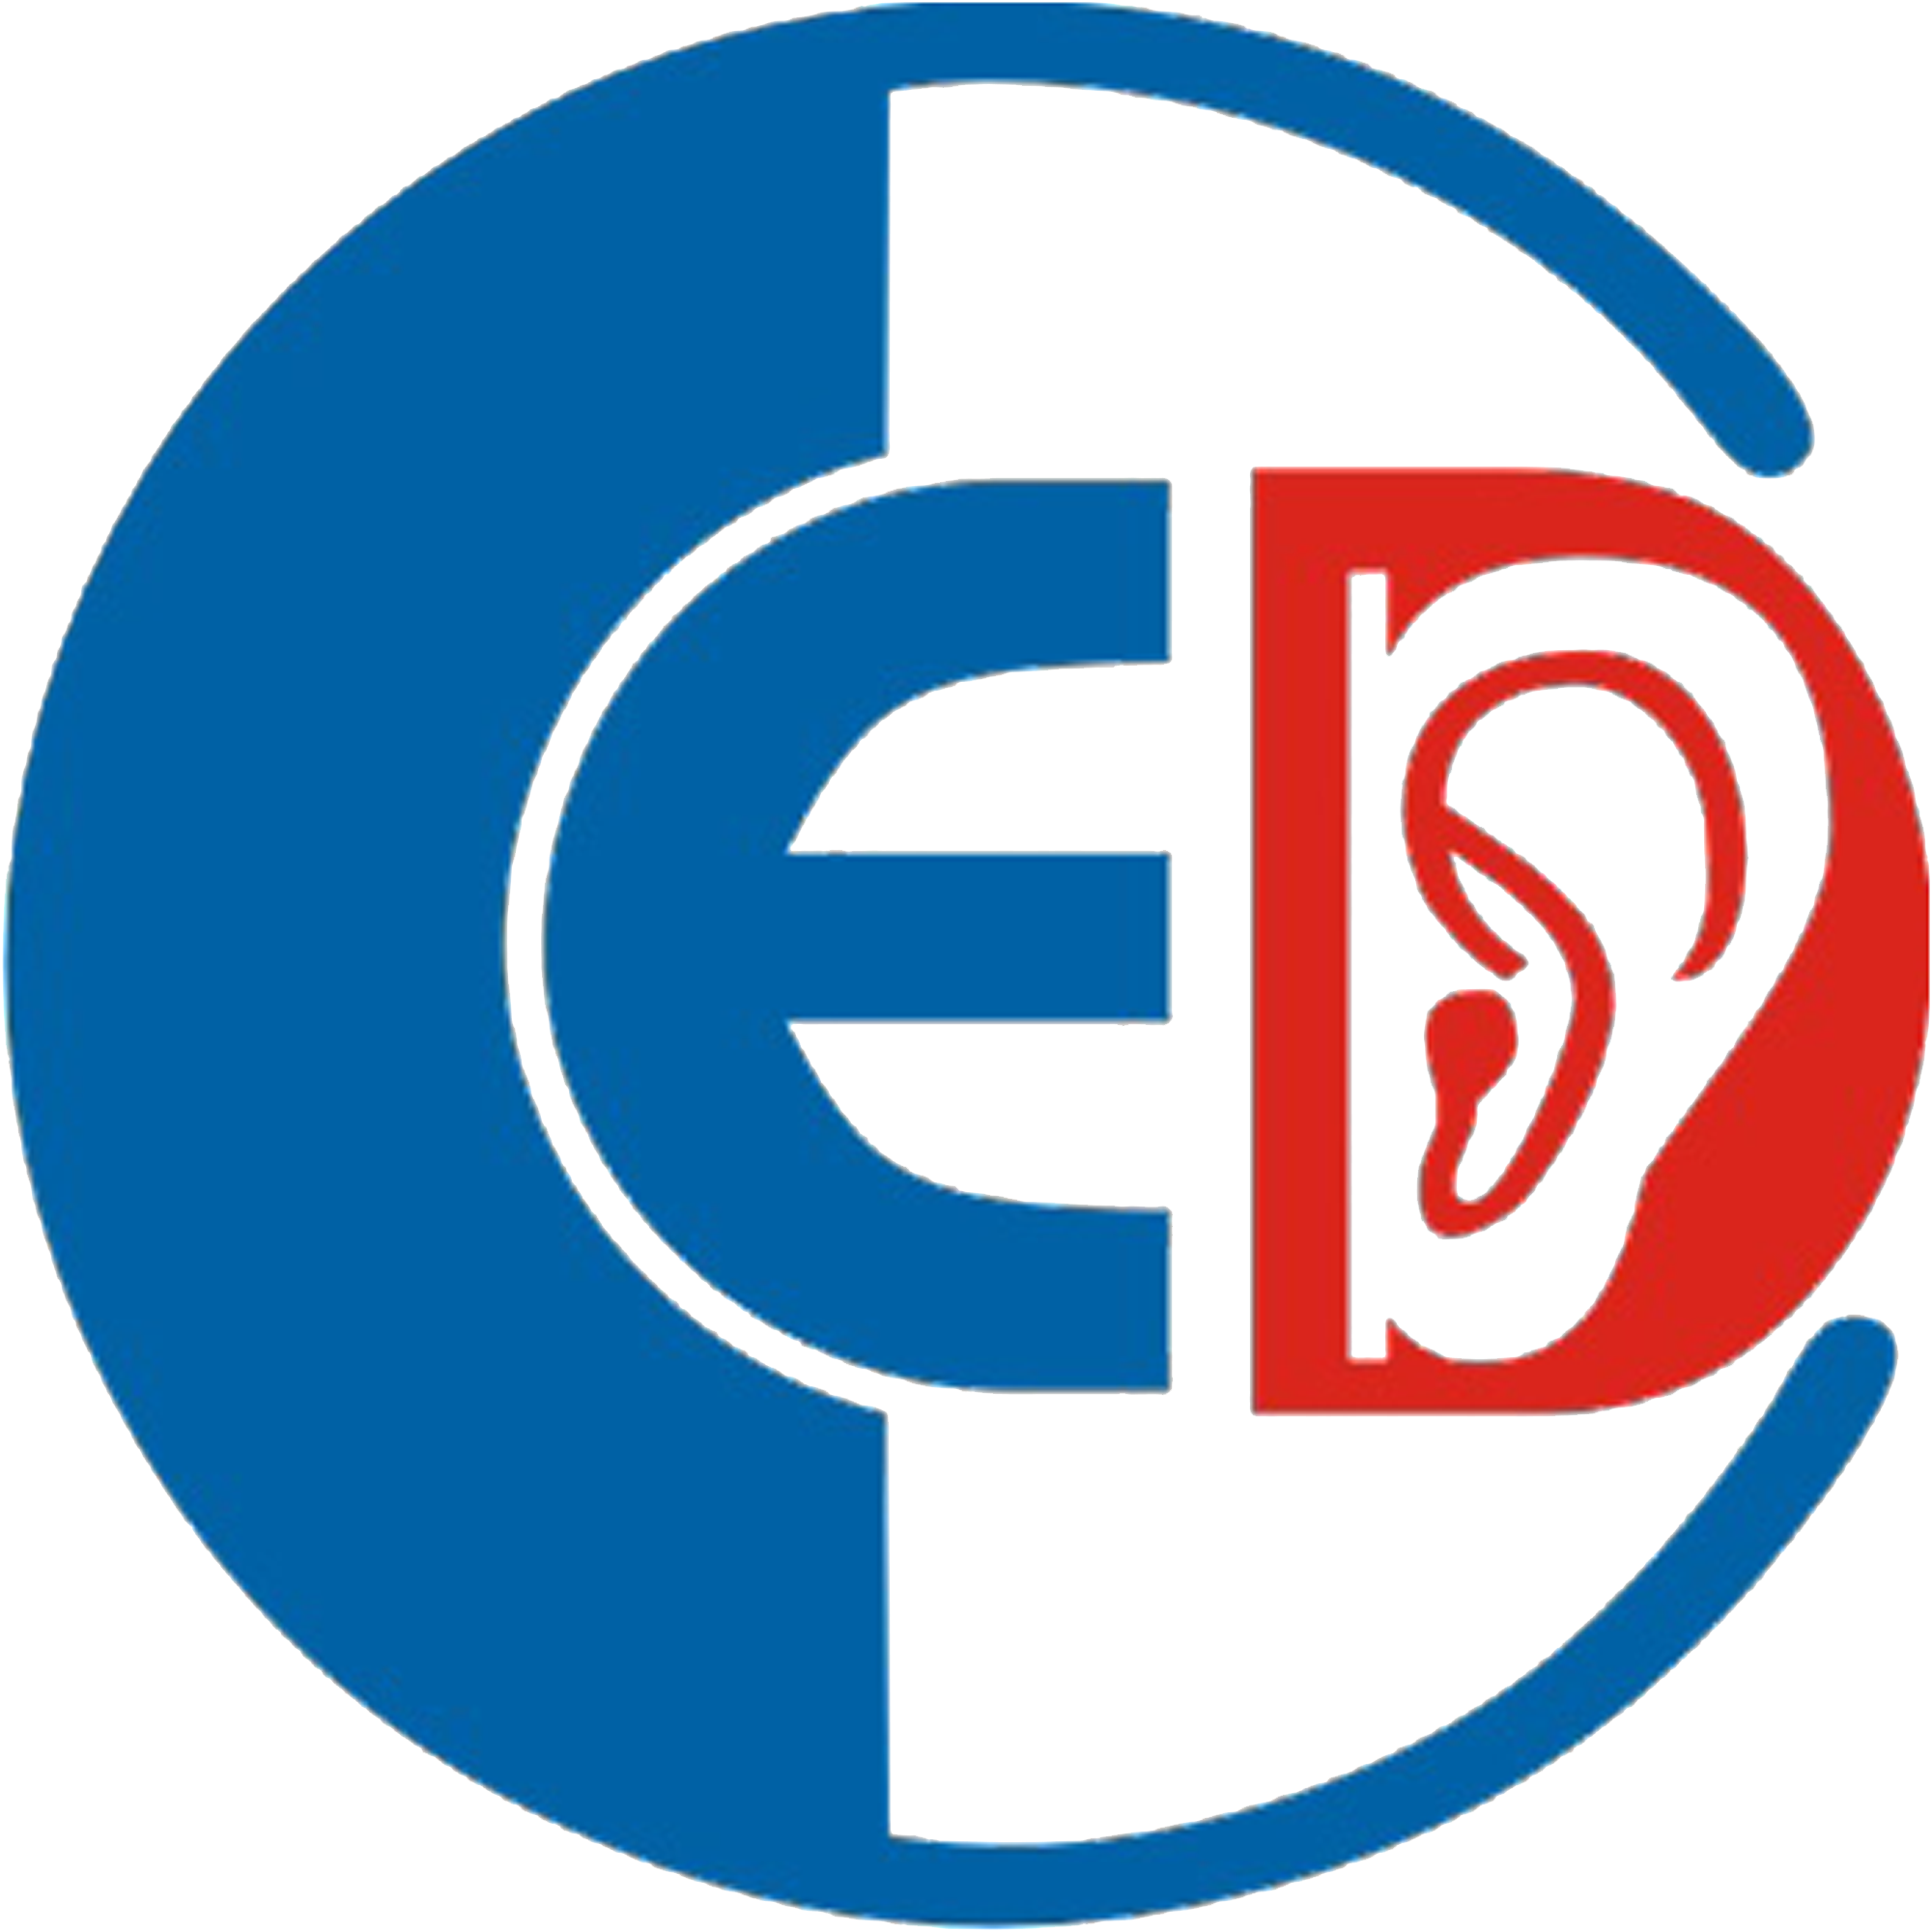 Dự án “Thành lập Trung tâm Nghiên cứu Giáo dục Người Khiếm thính (CED)”